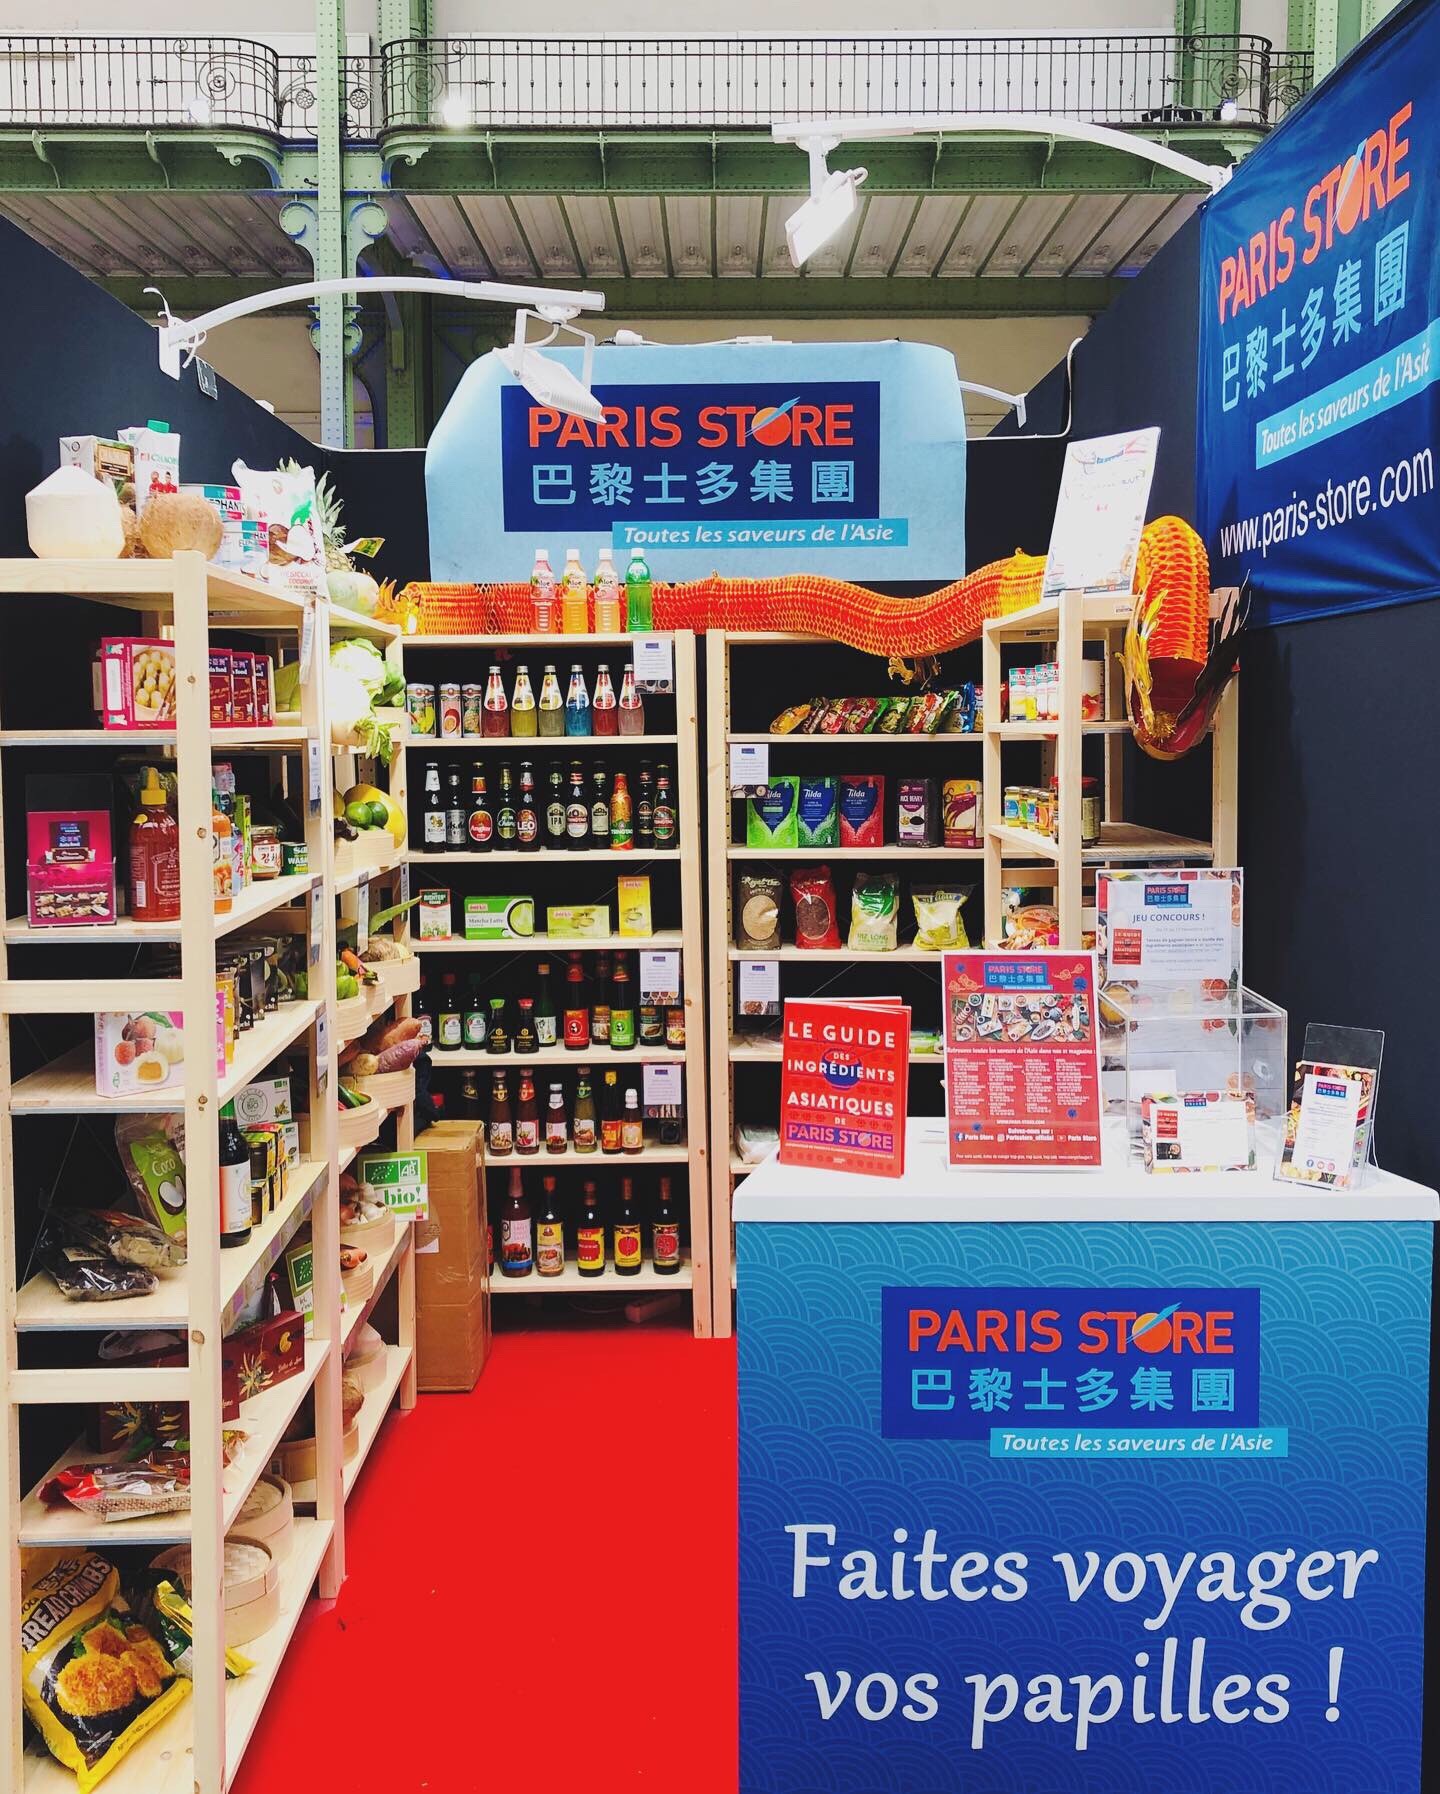 Paris Store - Votre épicerie et supermarché asiatique en France